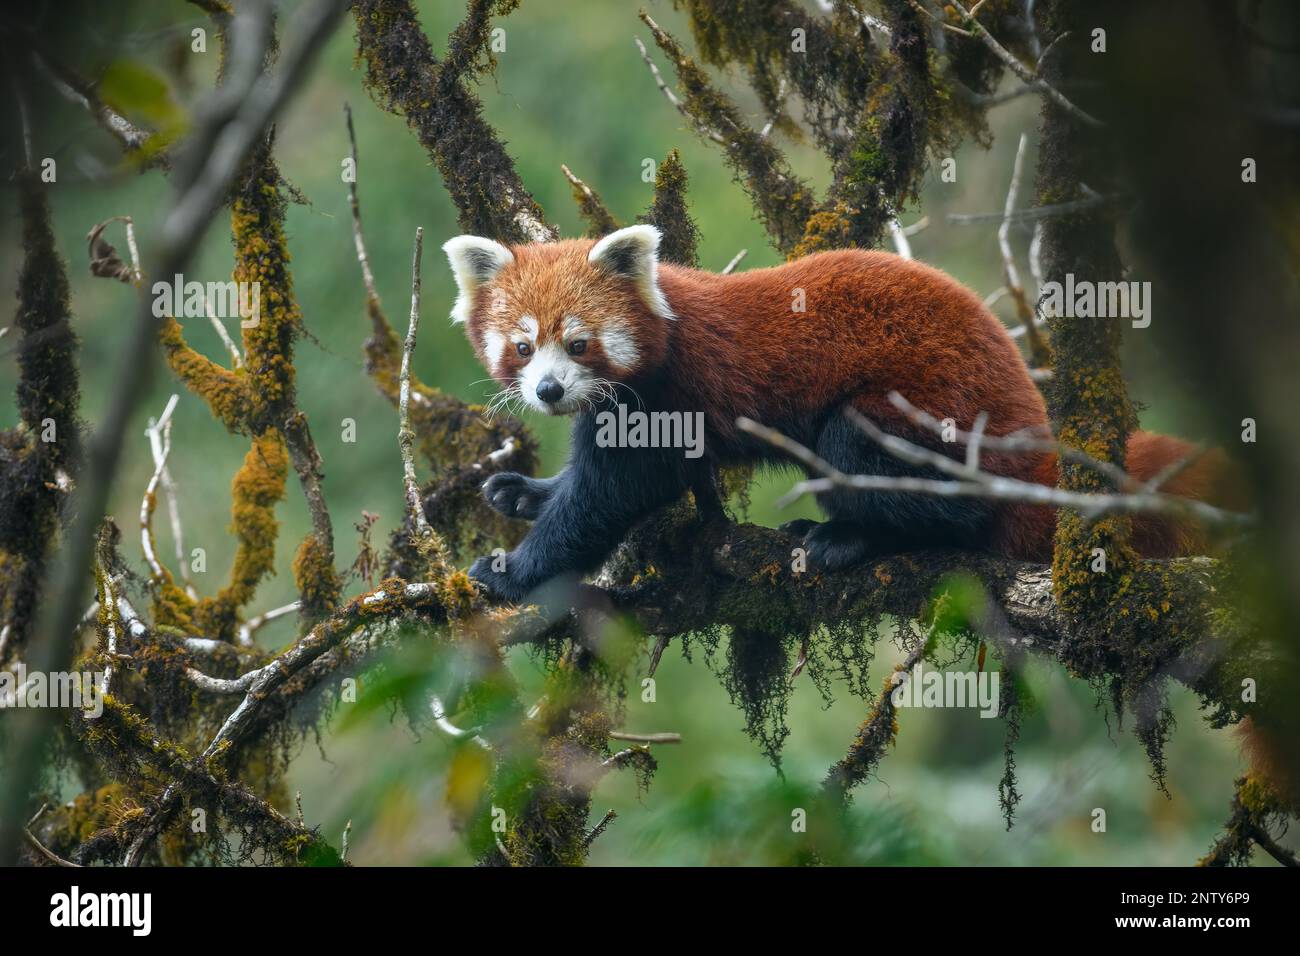 Immagine ritratto a tutto corpo di una femmina di panda rossa seduta in un albero di noce di quercia mossicante che mostra la brillante colorazione arancione nell'habitat naturale Foto Stock